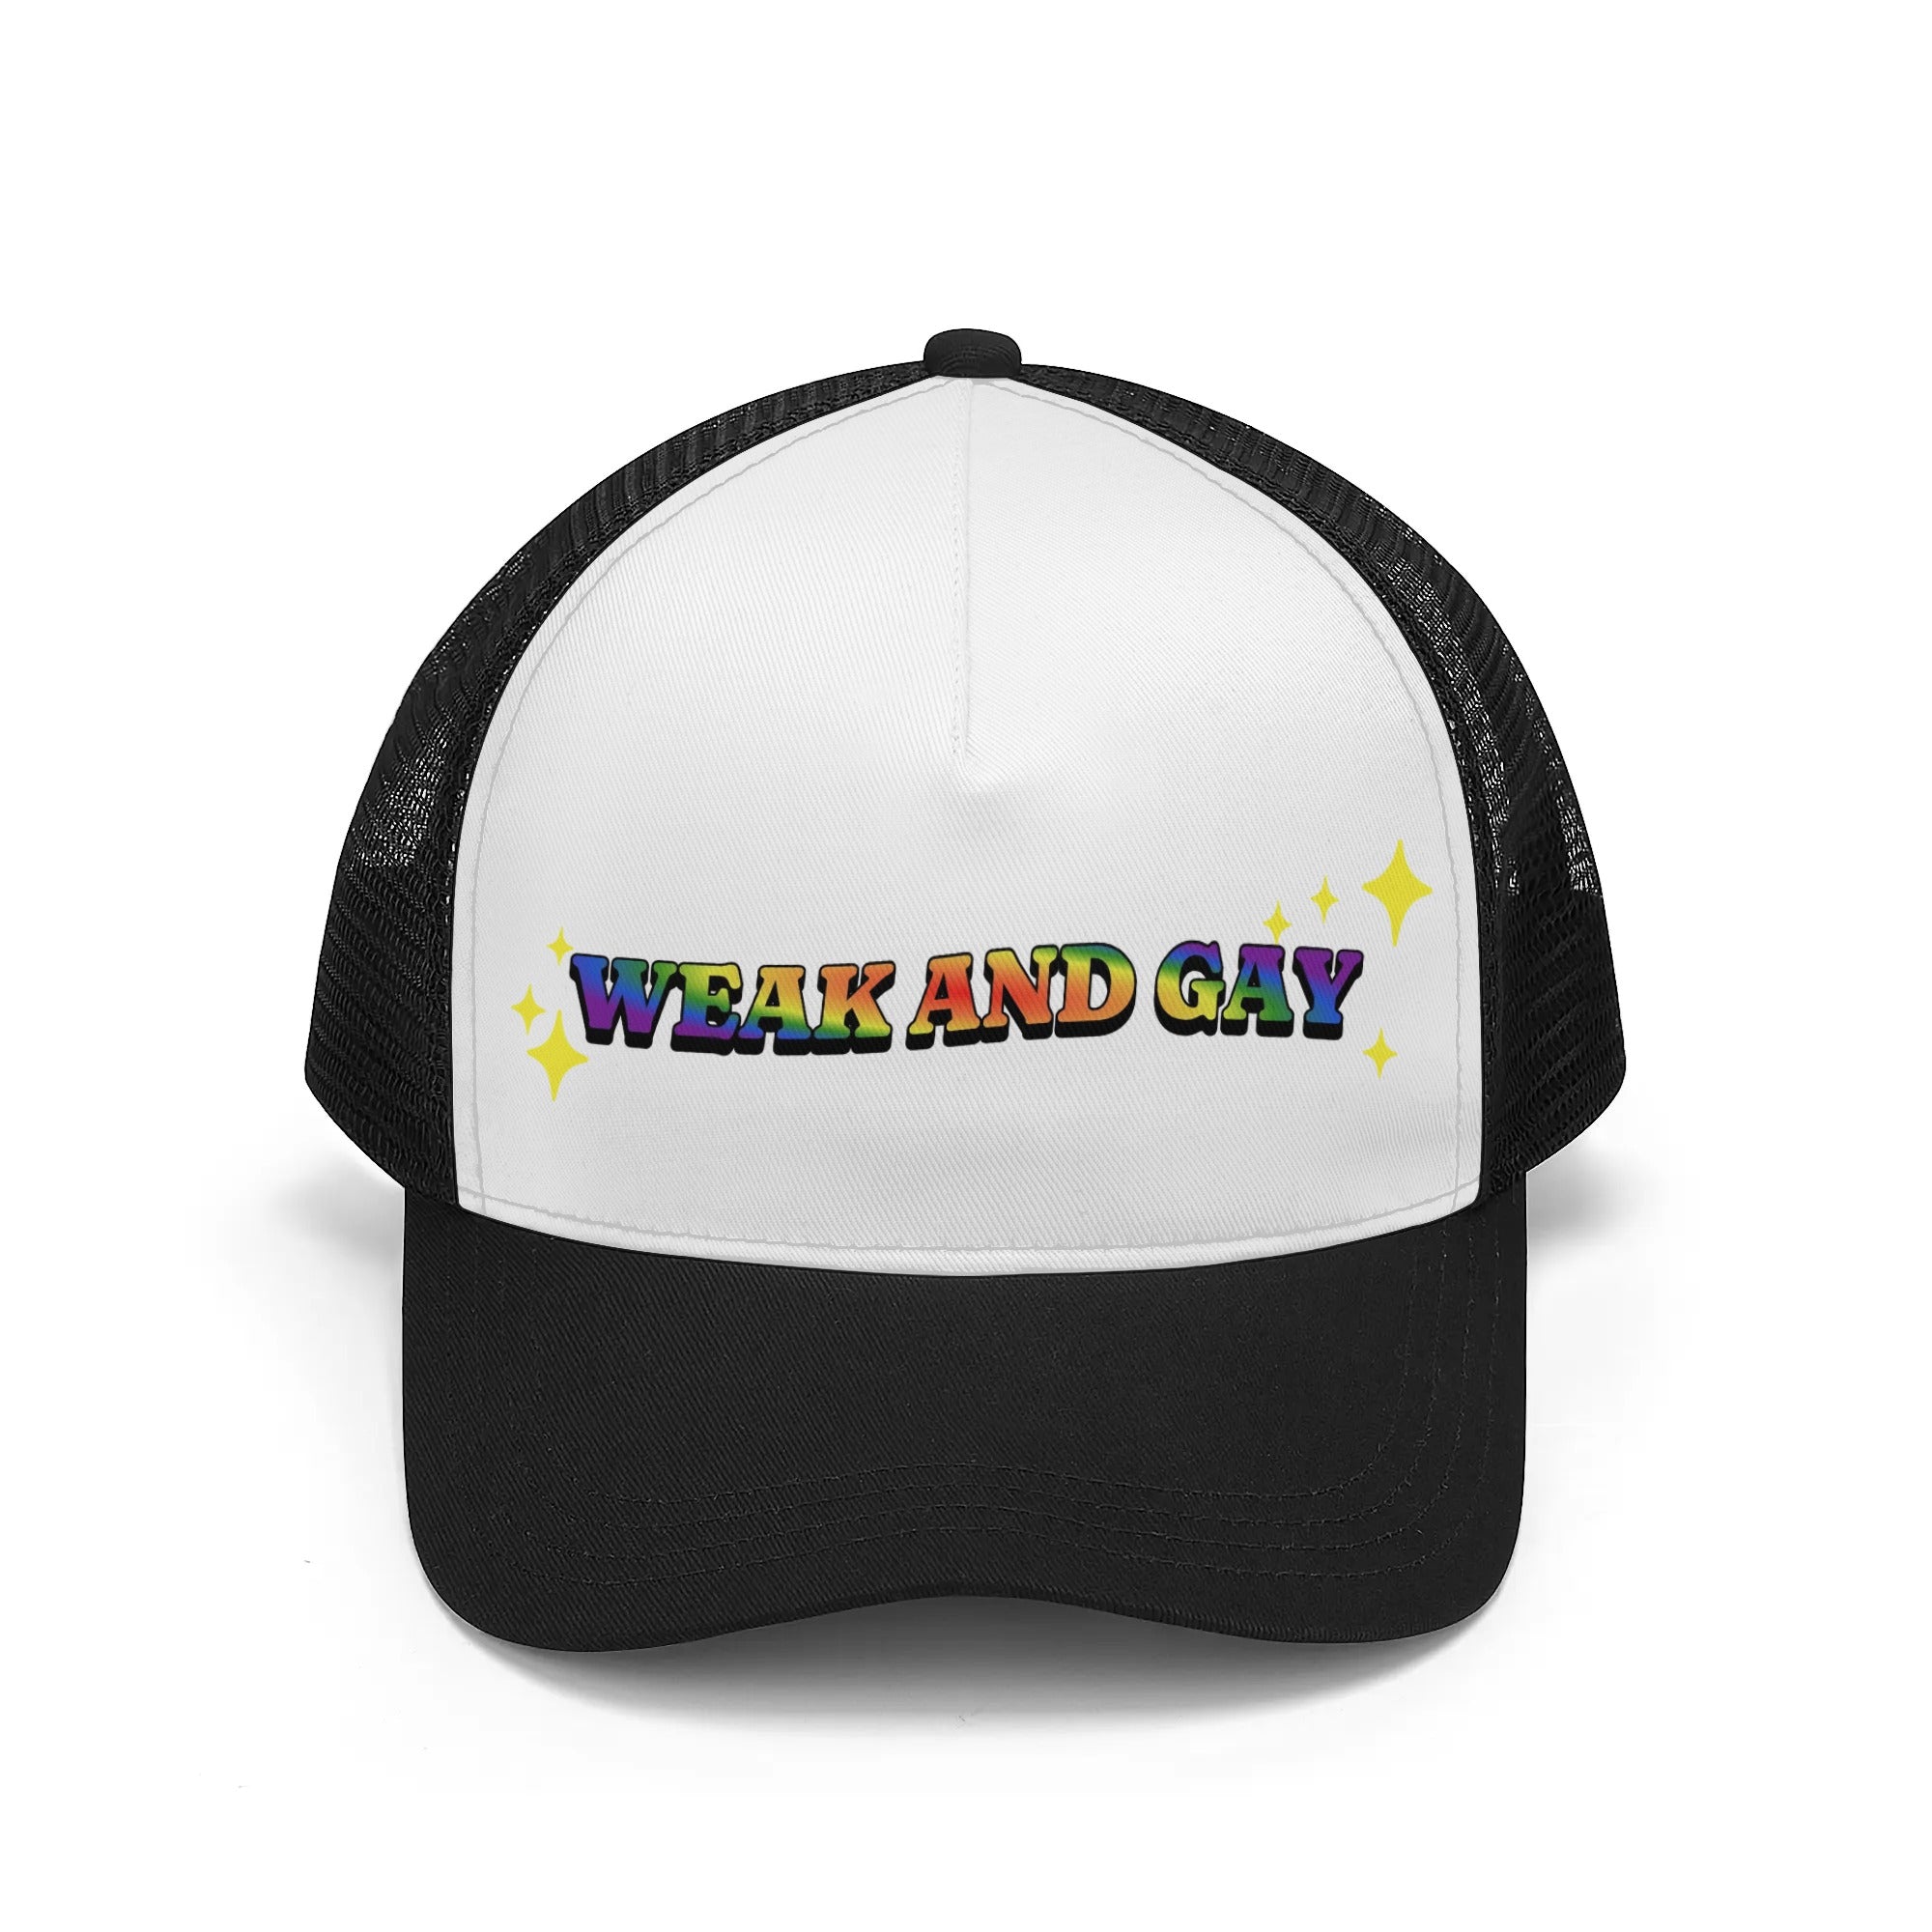 Weak and Gay Mesh Trucker Hats